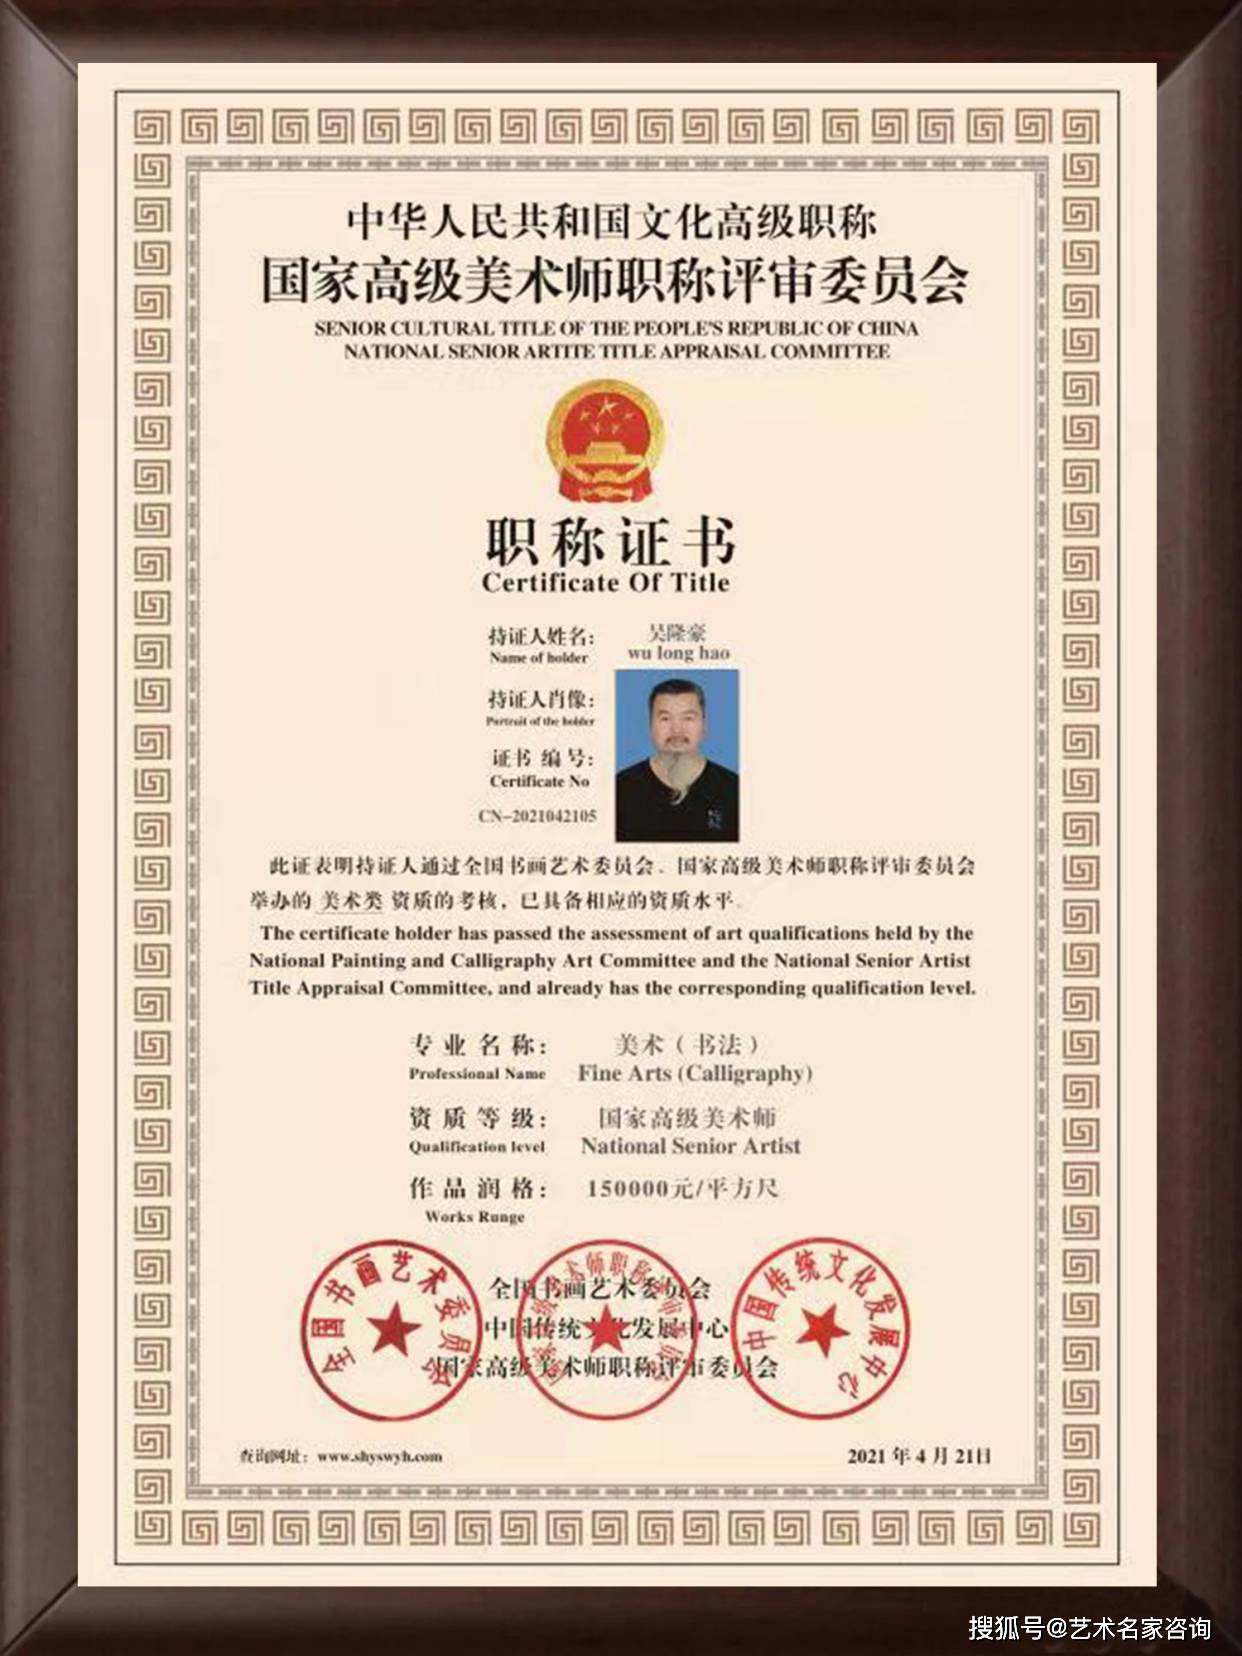 吴隆豪 中国文化高级职称国家高级美术师 高级职称证书